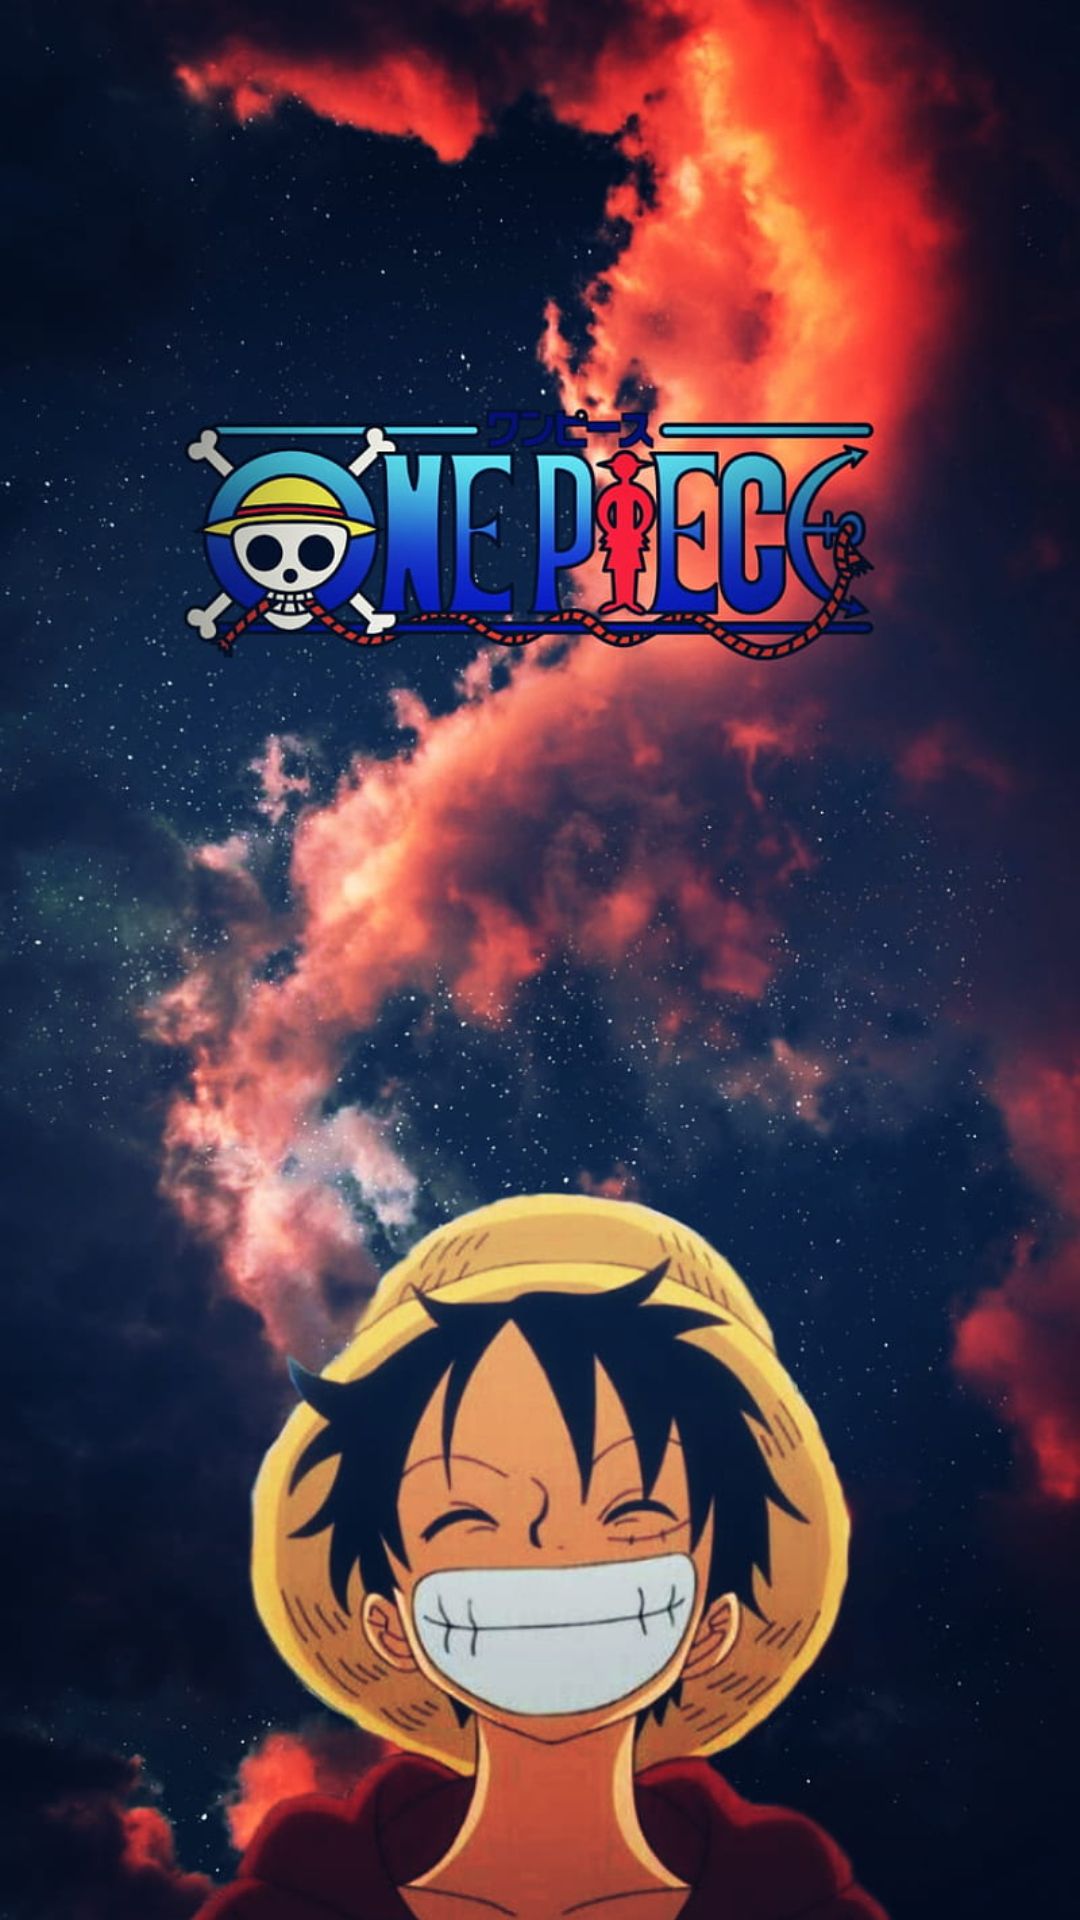 Hình nền One Piece cho điện thoại sẽ khiến bạn không khỏi hào hứng khi mỗi lần mở khóa điện thoại. Hình ảnh sáng tạo và độc đáo của One Piece sẽ khiến cho thiết bị của bạn trở nên nổi bật và cá tính hơn bao giờ hết.